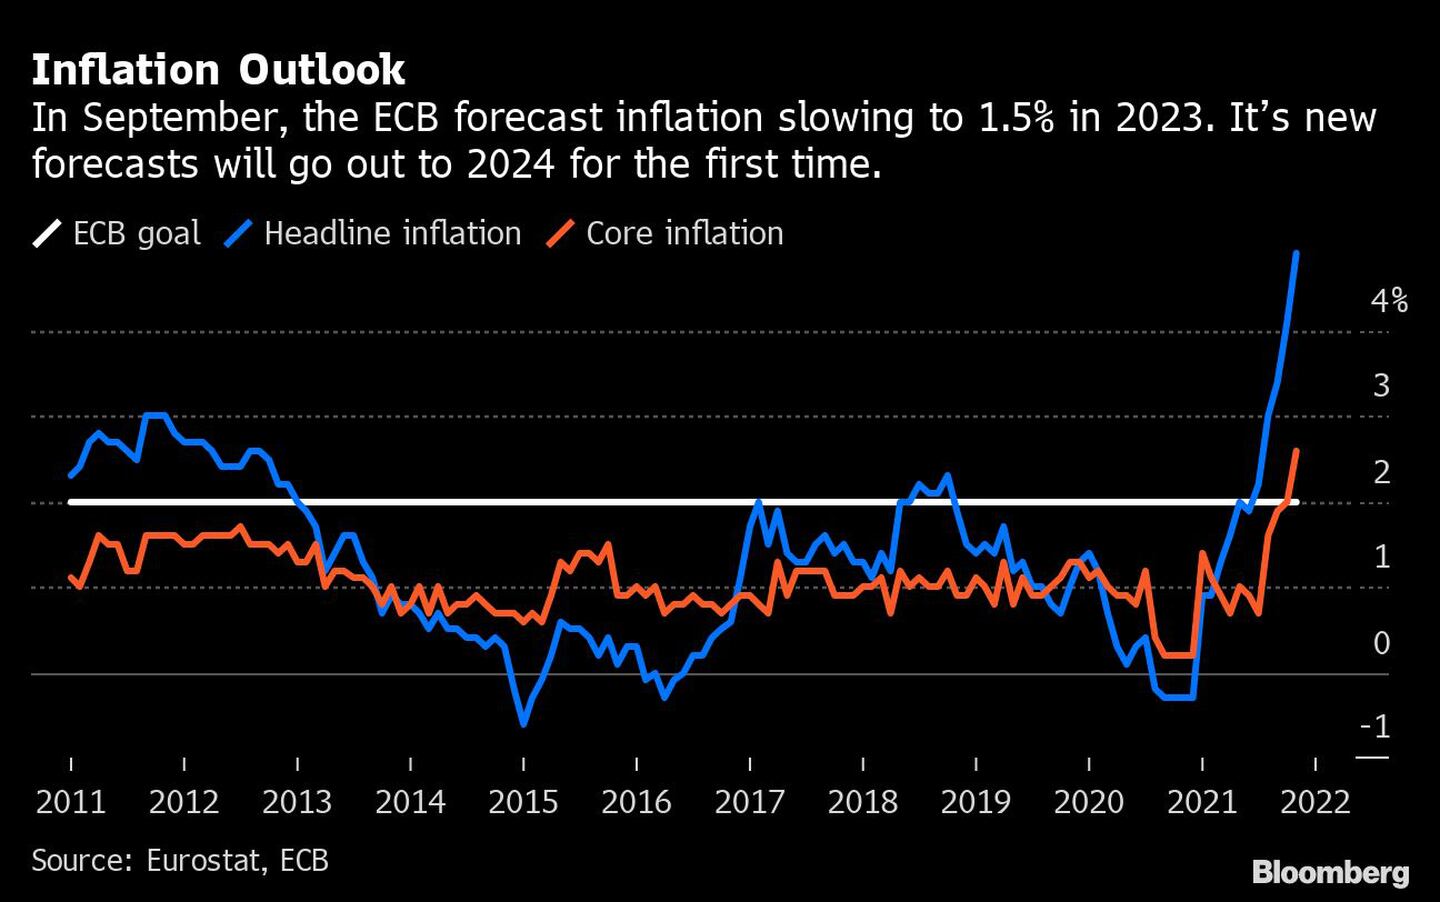 Perspectivas de inflación
En septiembre, el BCE preveía una desaceleración de la inflación hasta el 1,5% en 2023. Sus nuevas previsiones llegan por primera vez hasta 2024. 
Blanco: Objetivo del BCE
Azul: Inflación general
Rojo: Inflación subyacentedfd